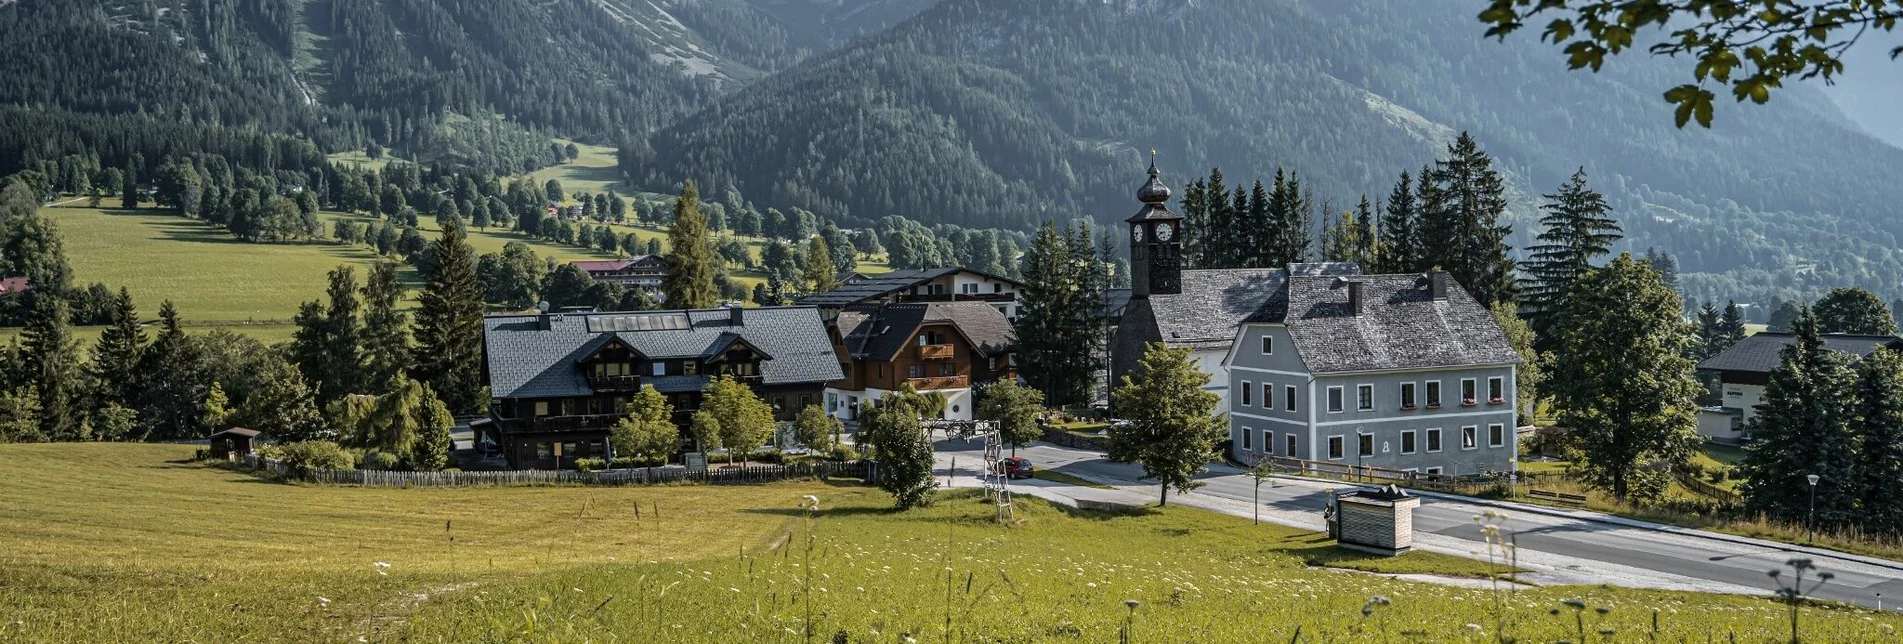 Hiking route Ramsau Village Tour - Touren-Impression #1 | © Erlebnisregion Schladming-Dachstein